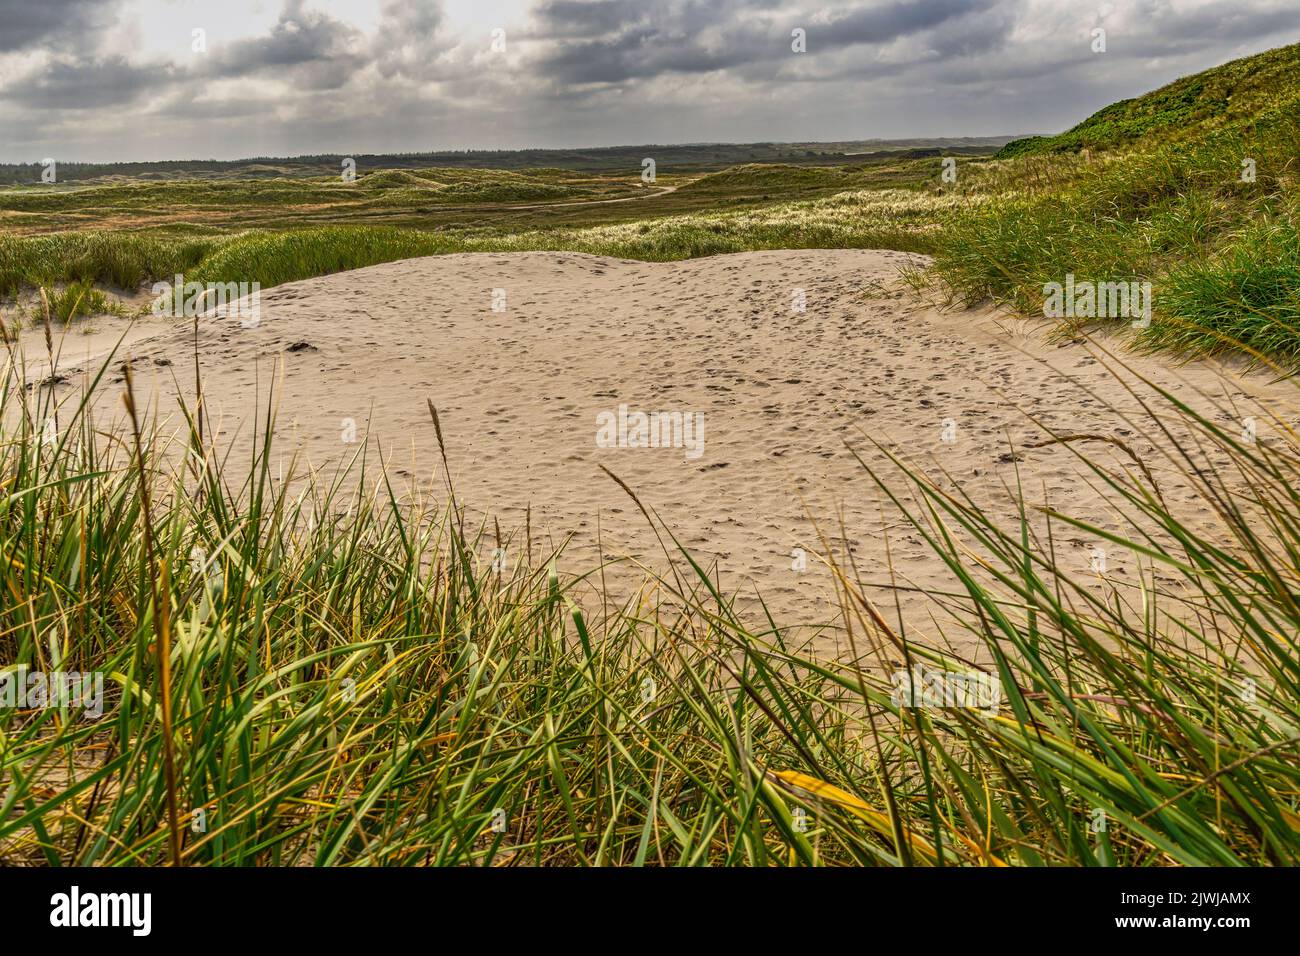 Dunes de sable à la plage de Nymindegab une belle plage de sable sur la mer du Nord. Nymindegab, Jutland du Sud-Ouest, Danemark, Europe Banque D'Images